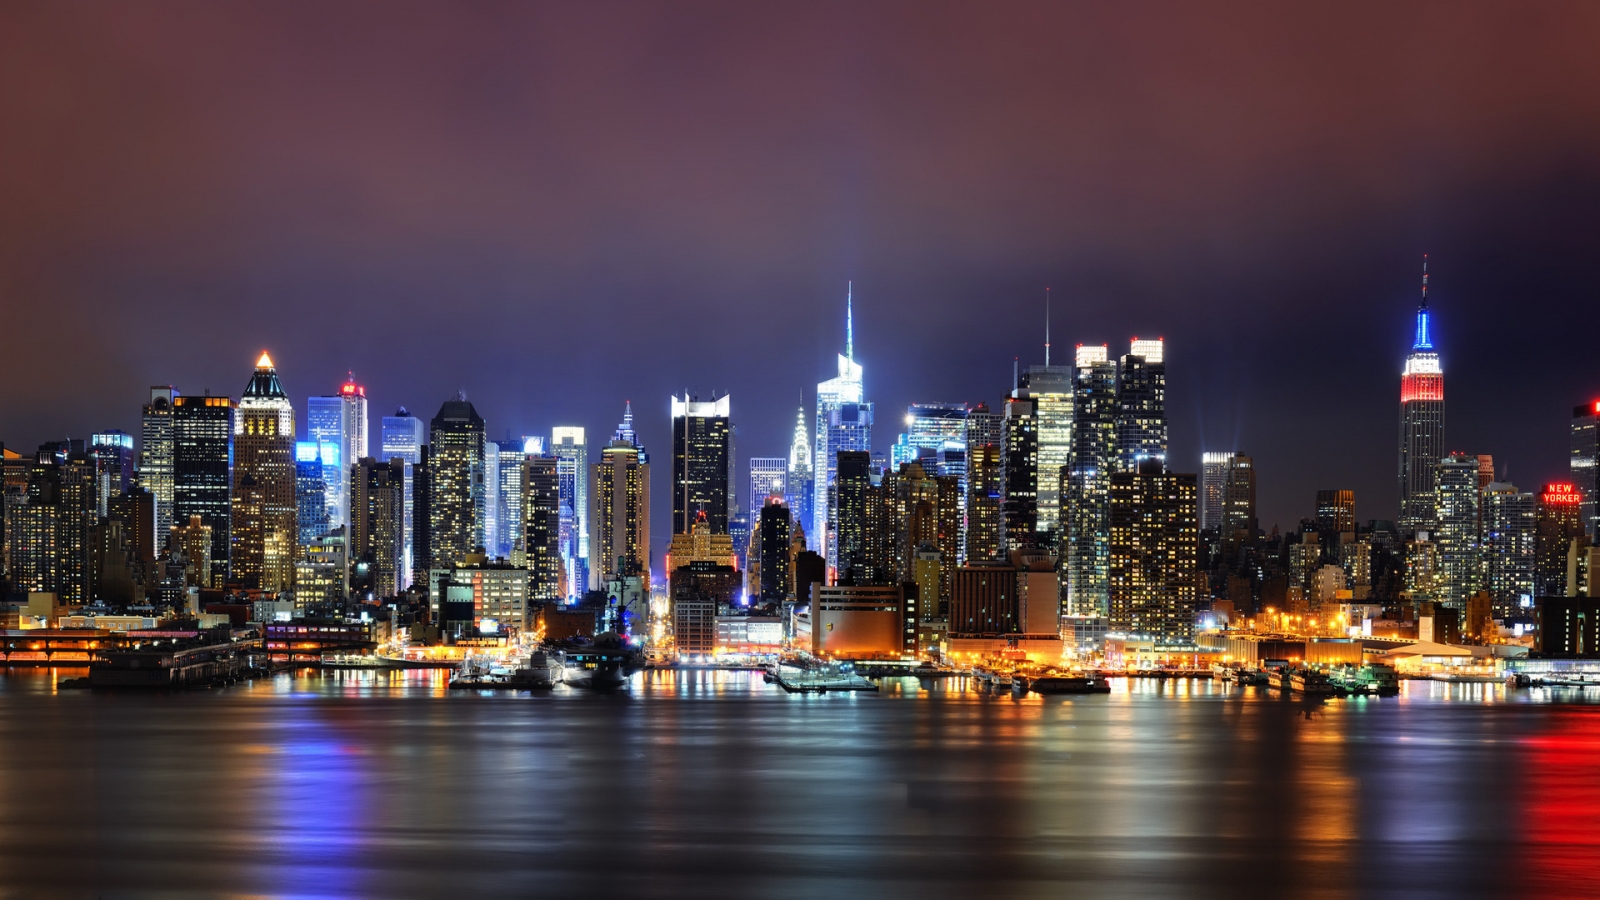 New York Lighting for 1600 x 900 HDTV resolution